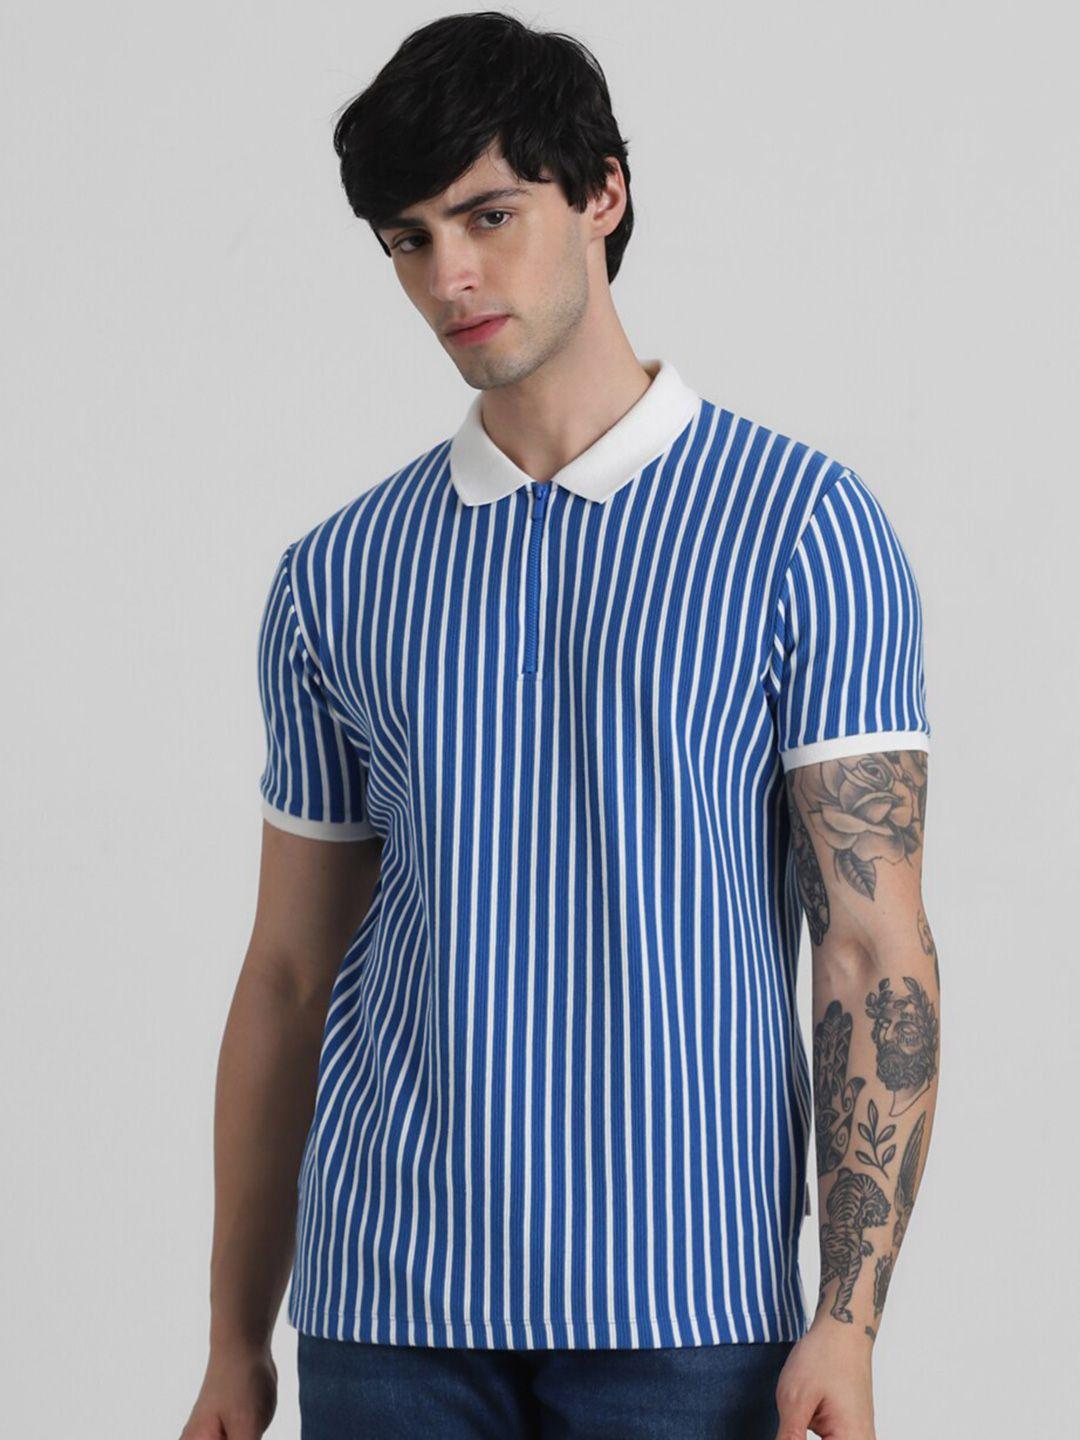 Jack & Jones Striped Slim Fit Pure Cotton T-shirt